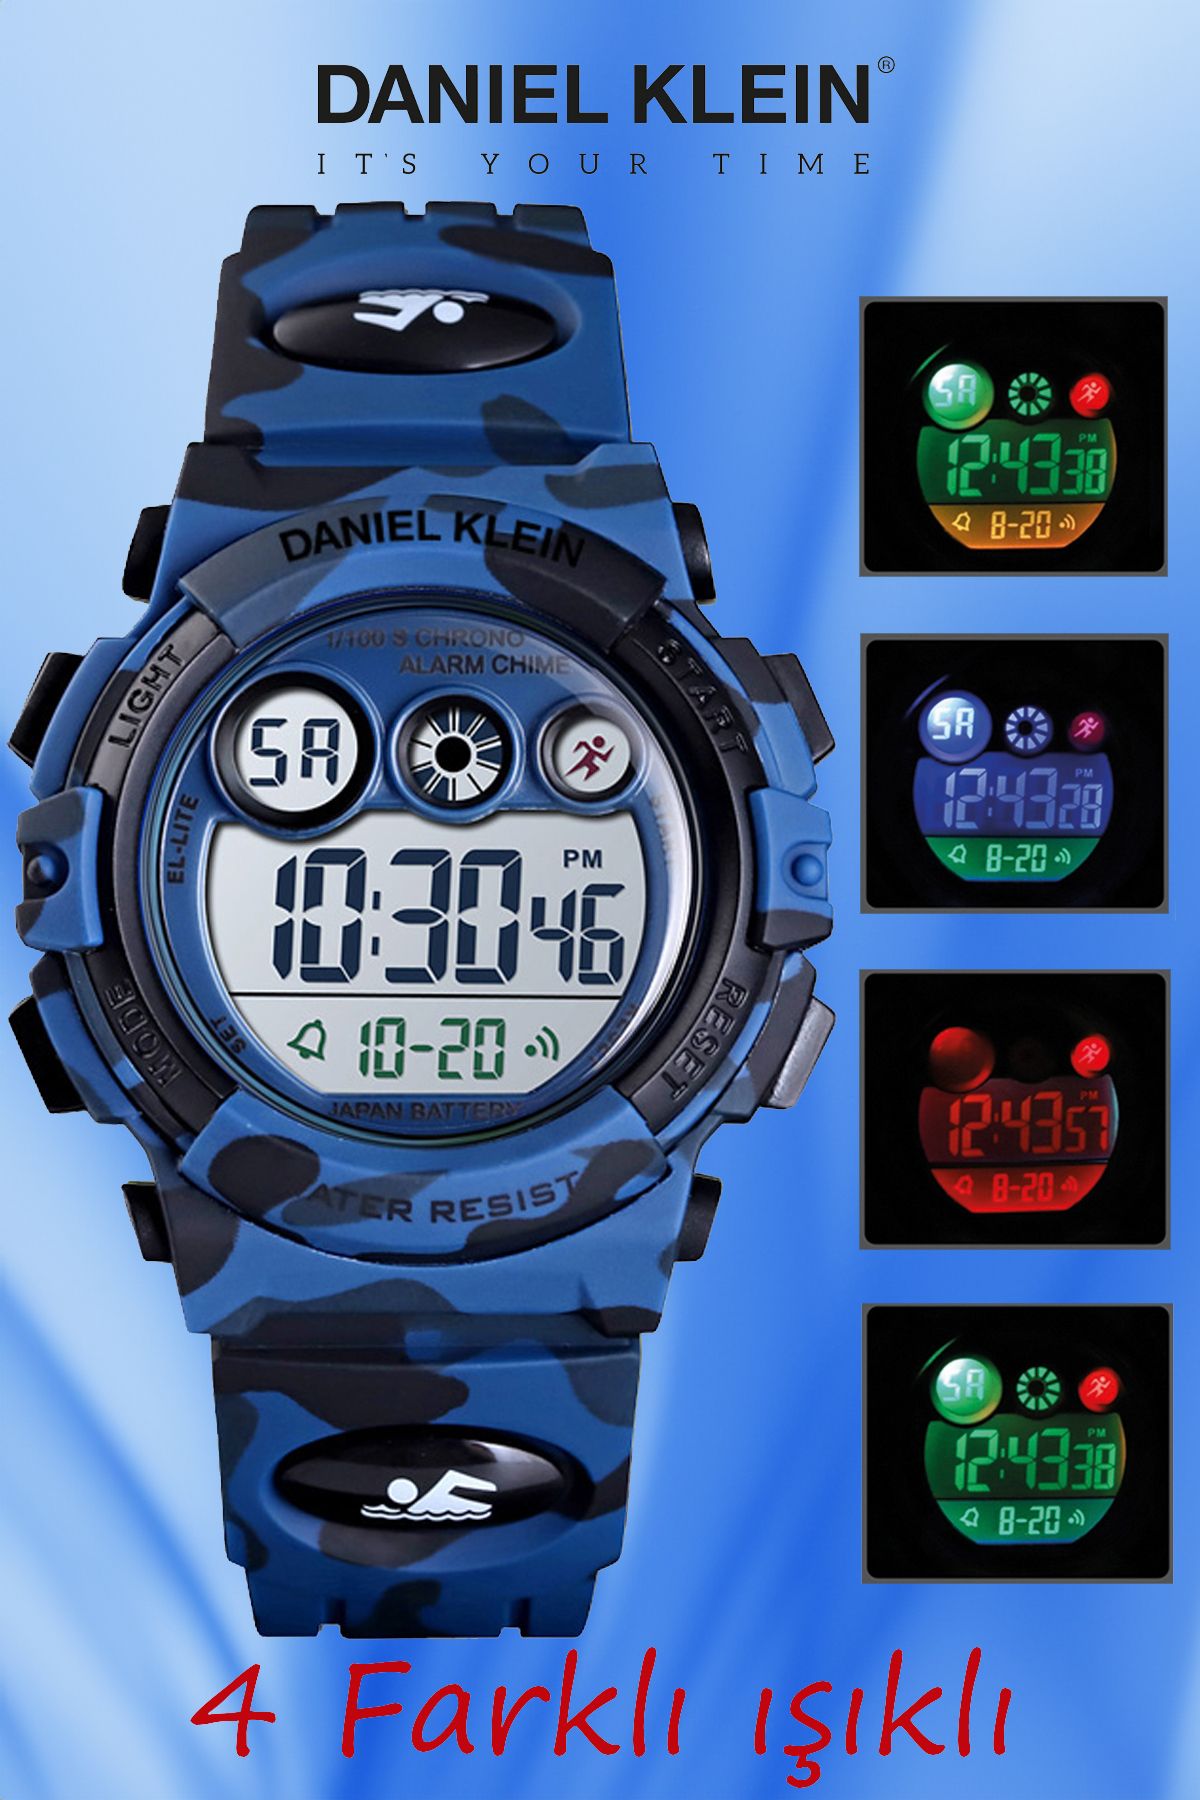 Daniel Klein 5-10 Yaş için Alarm ve Kronometre Özellikli, 4 Farklı Işıklı Koyu Mavi Kamuflaj Çocuk Kol Saati